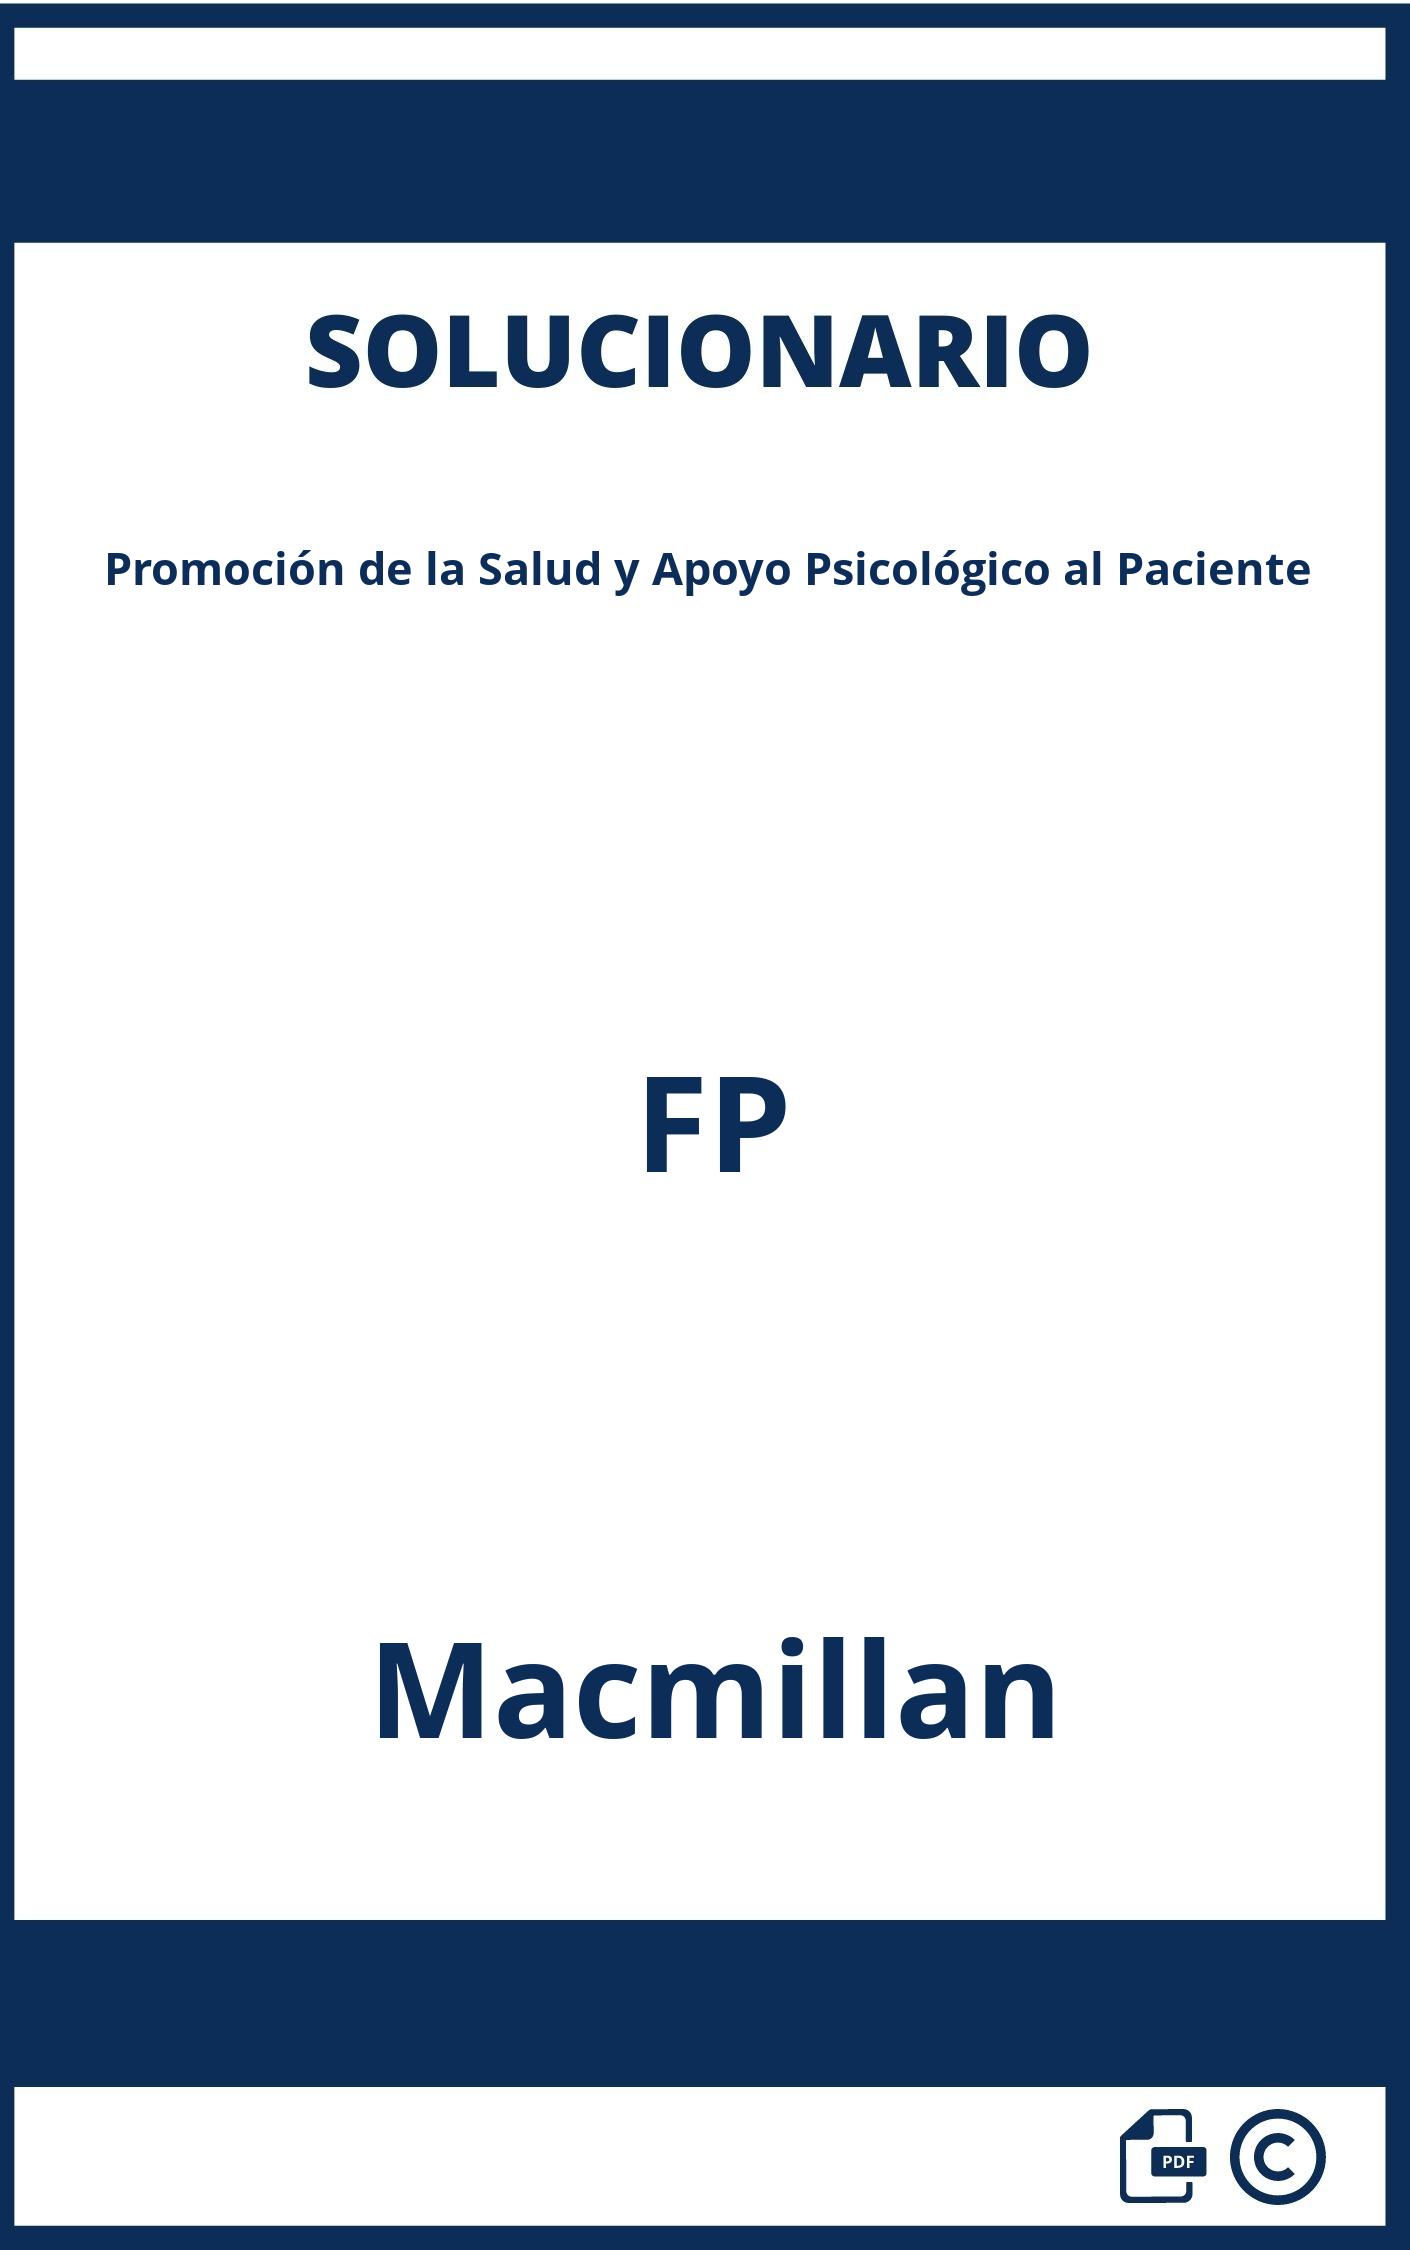 Solucionario Promoción de la Salud y Apoyo Psicológico al Paciente FP Macmillan